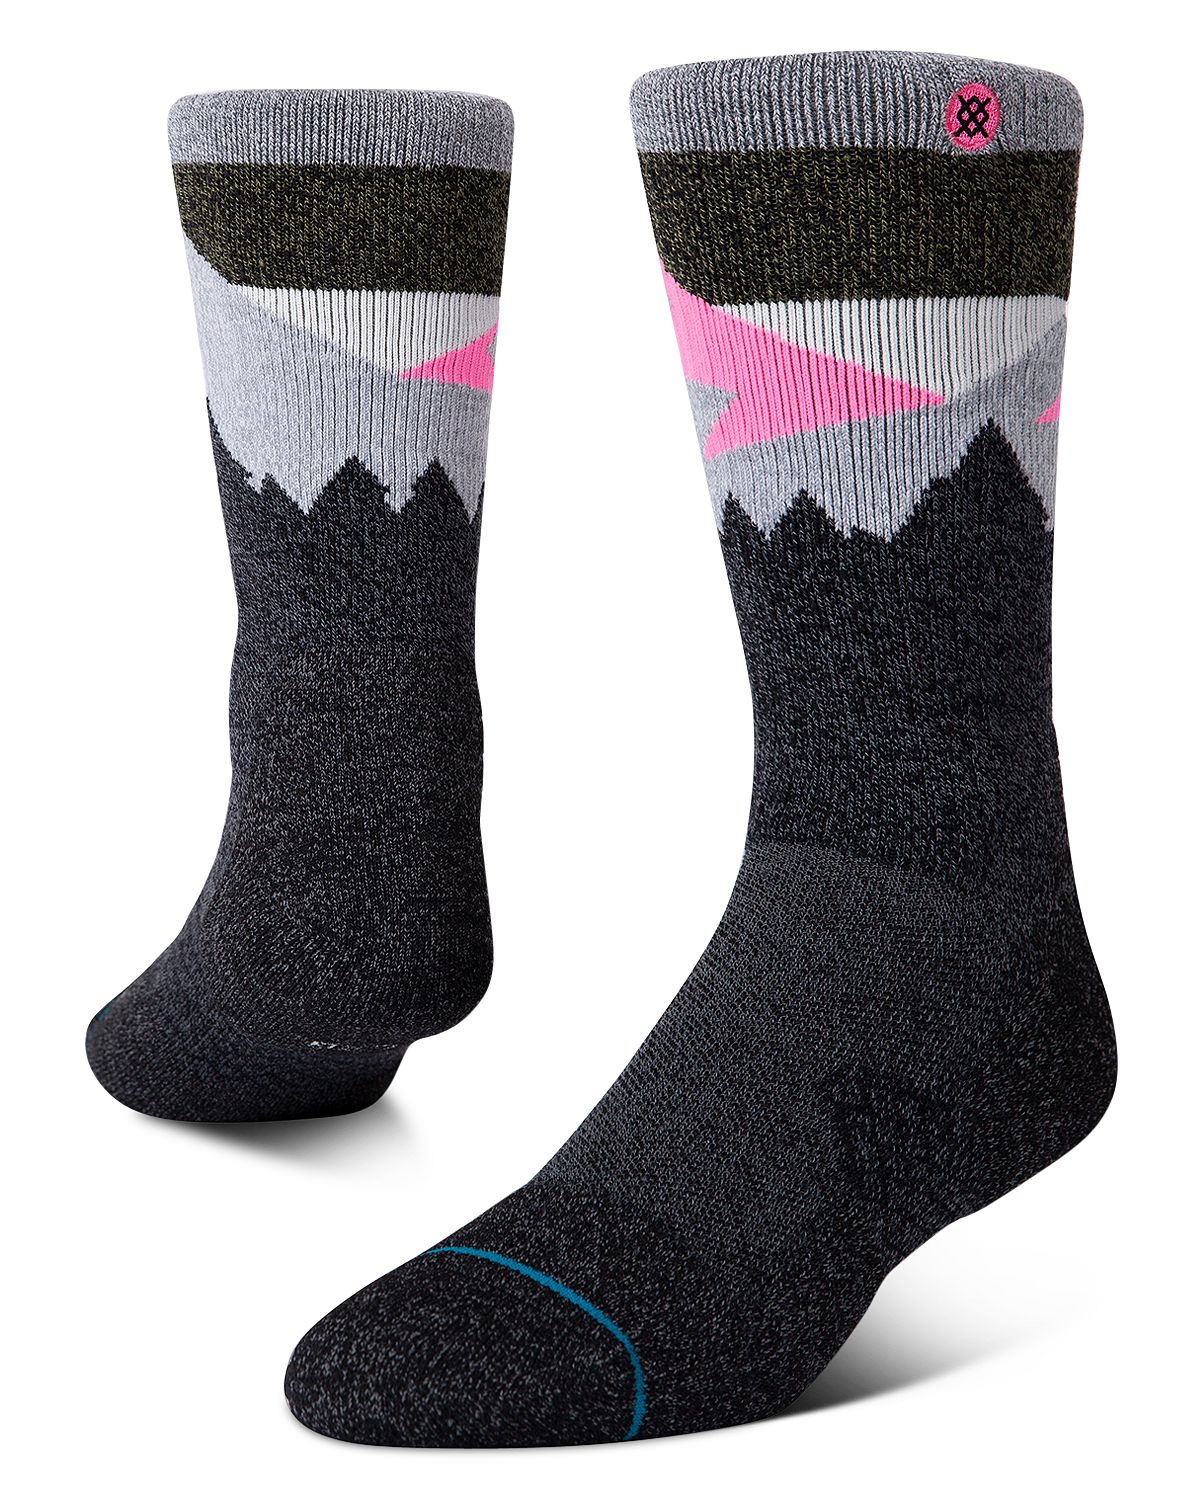 Stance Divide Socks Black/Pink